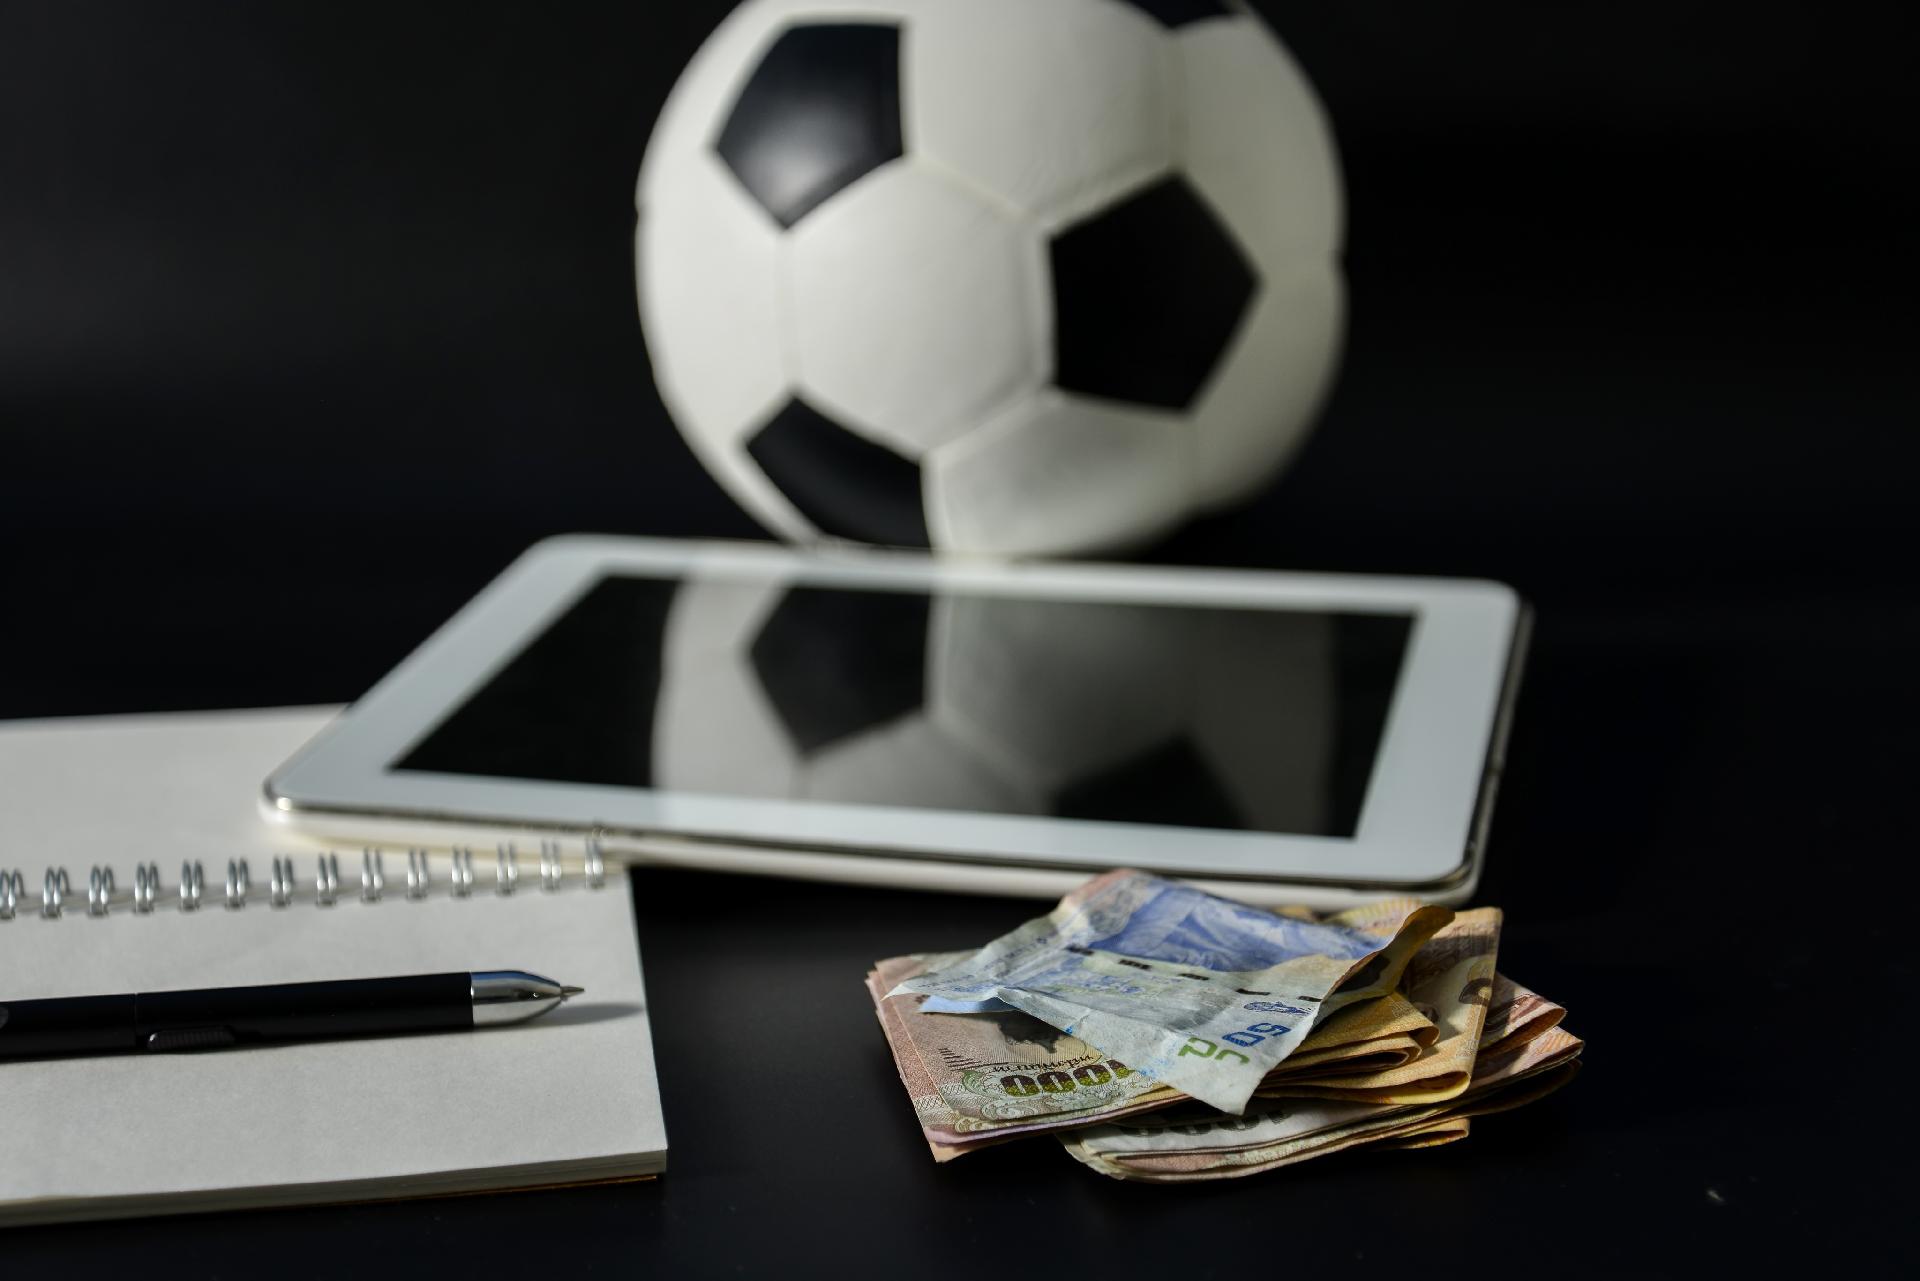 Como apostar em jogos de futebol online com segurança? - Gazeta Esportiva